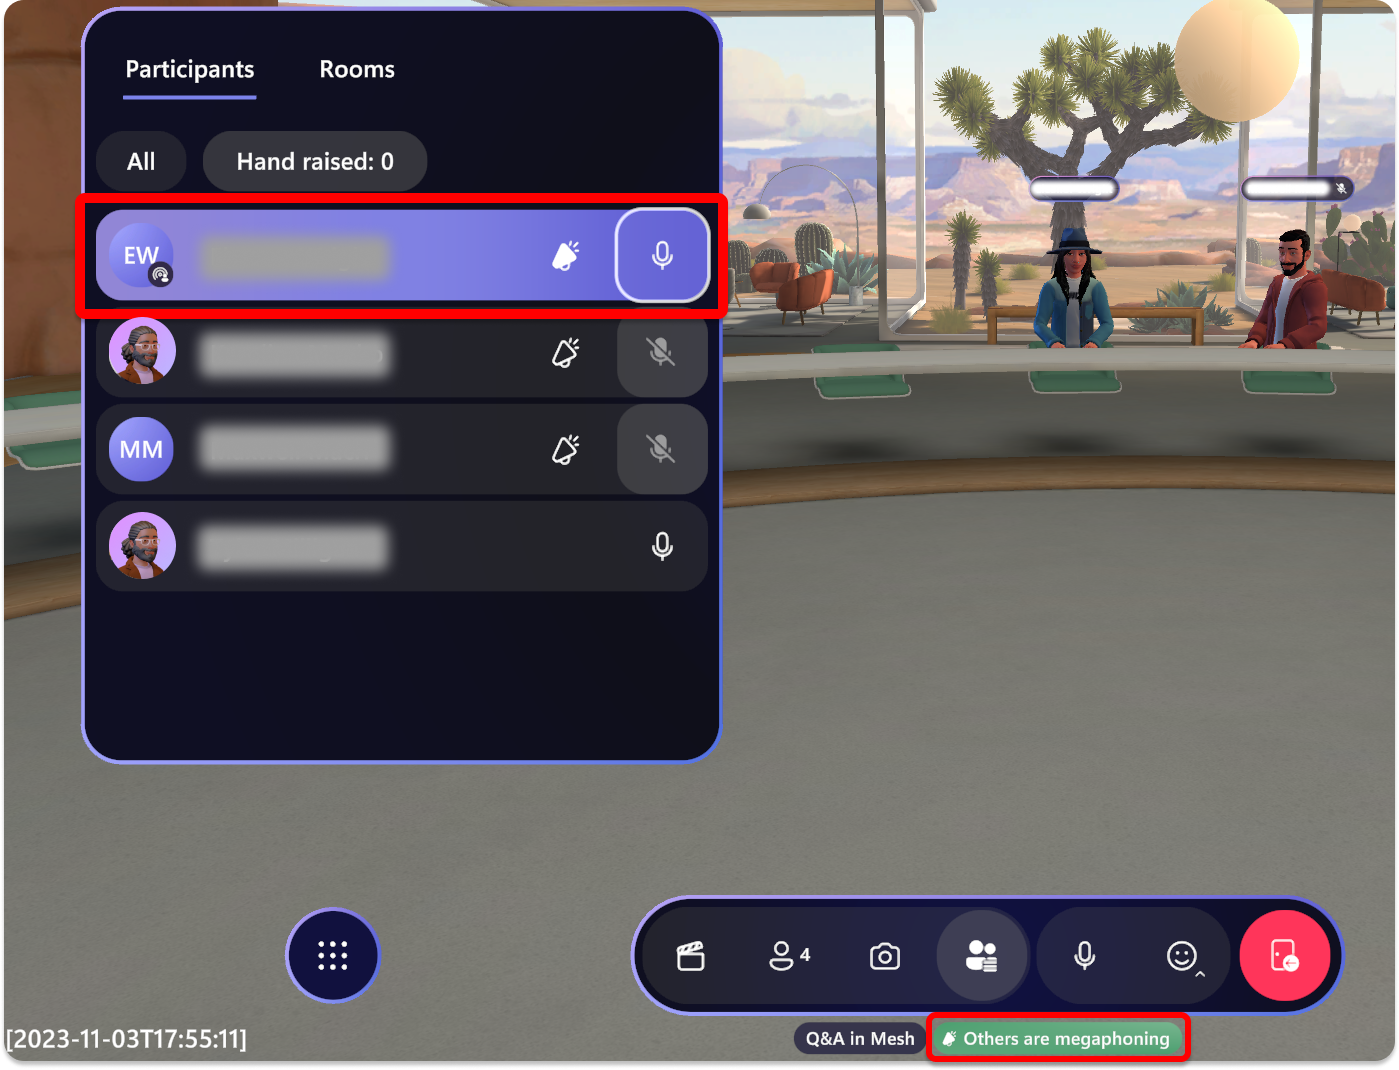 Captura de pantalla de Mesh en la que se muestran indicadores visuales que los asistentes tienen megafono o difusión.